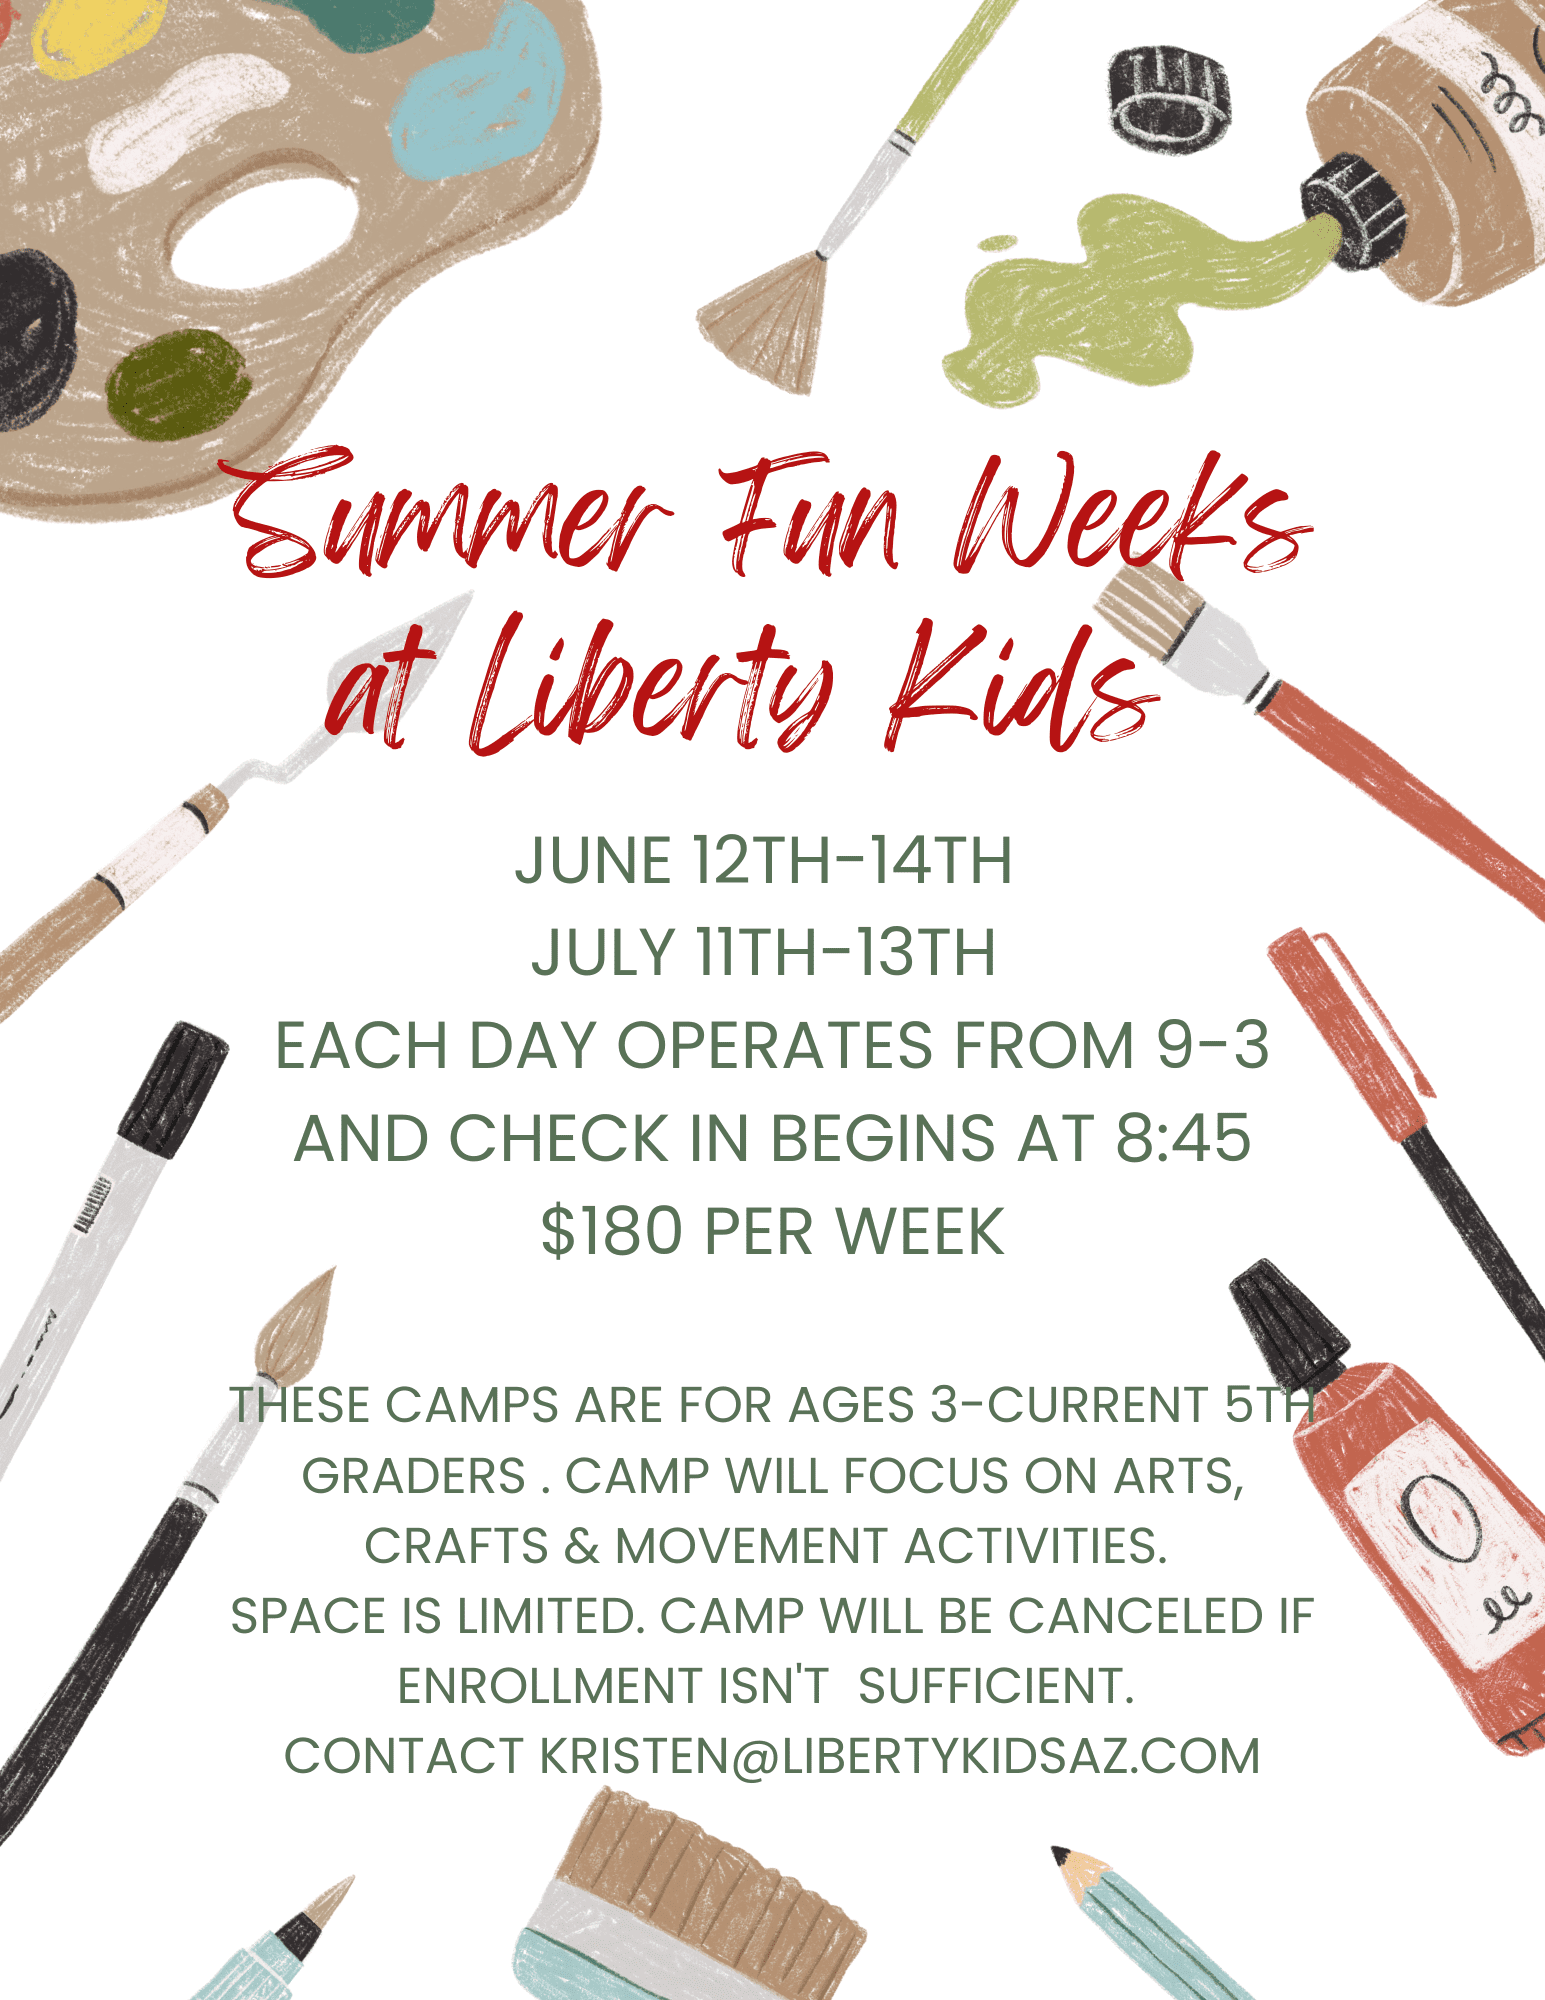 Summer-Fun-Weeks-at-Liberty-Kids-1